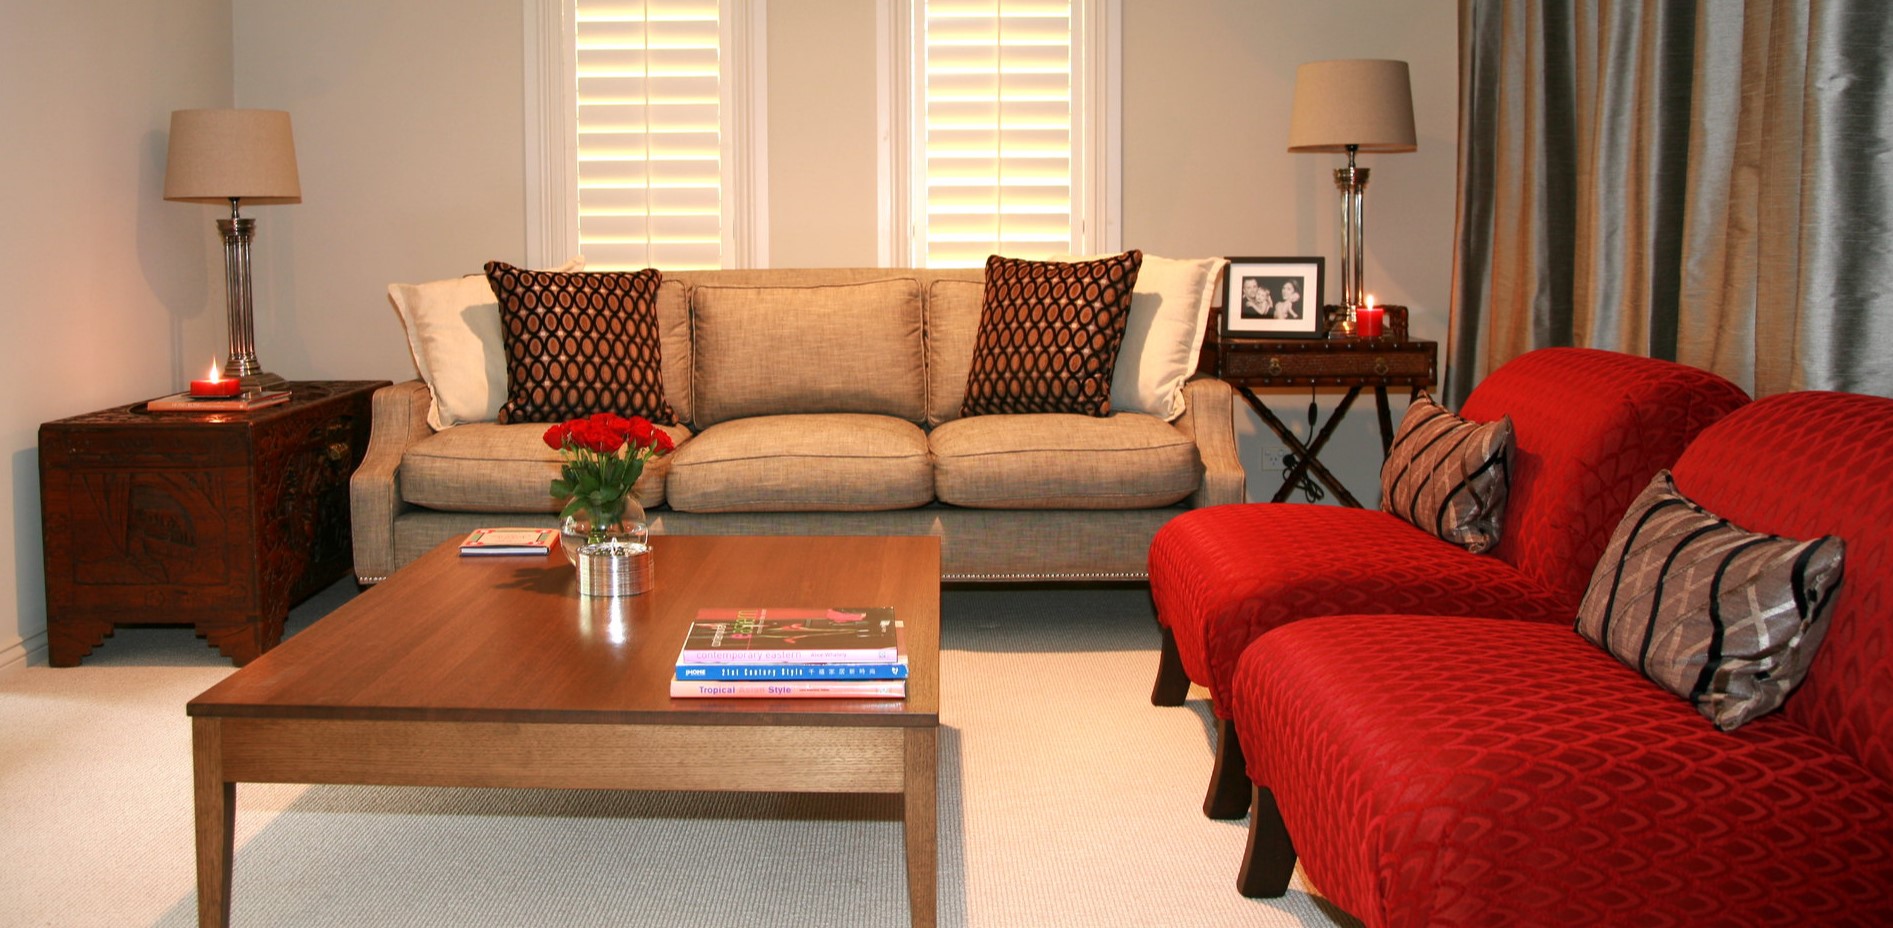 Для оформления гостиной как у Дженнифер Энистон рекомендуется использовать деревянную мебель в классическом современном стиле